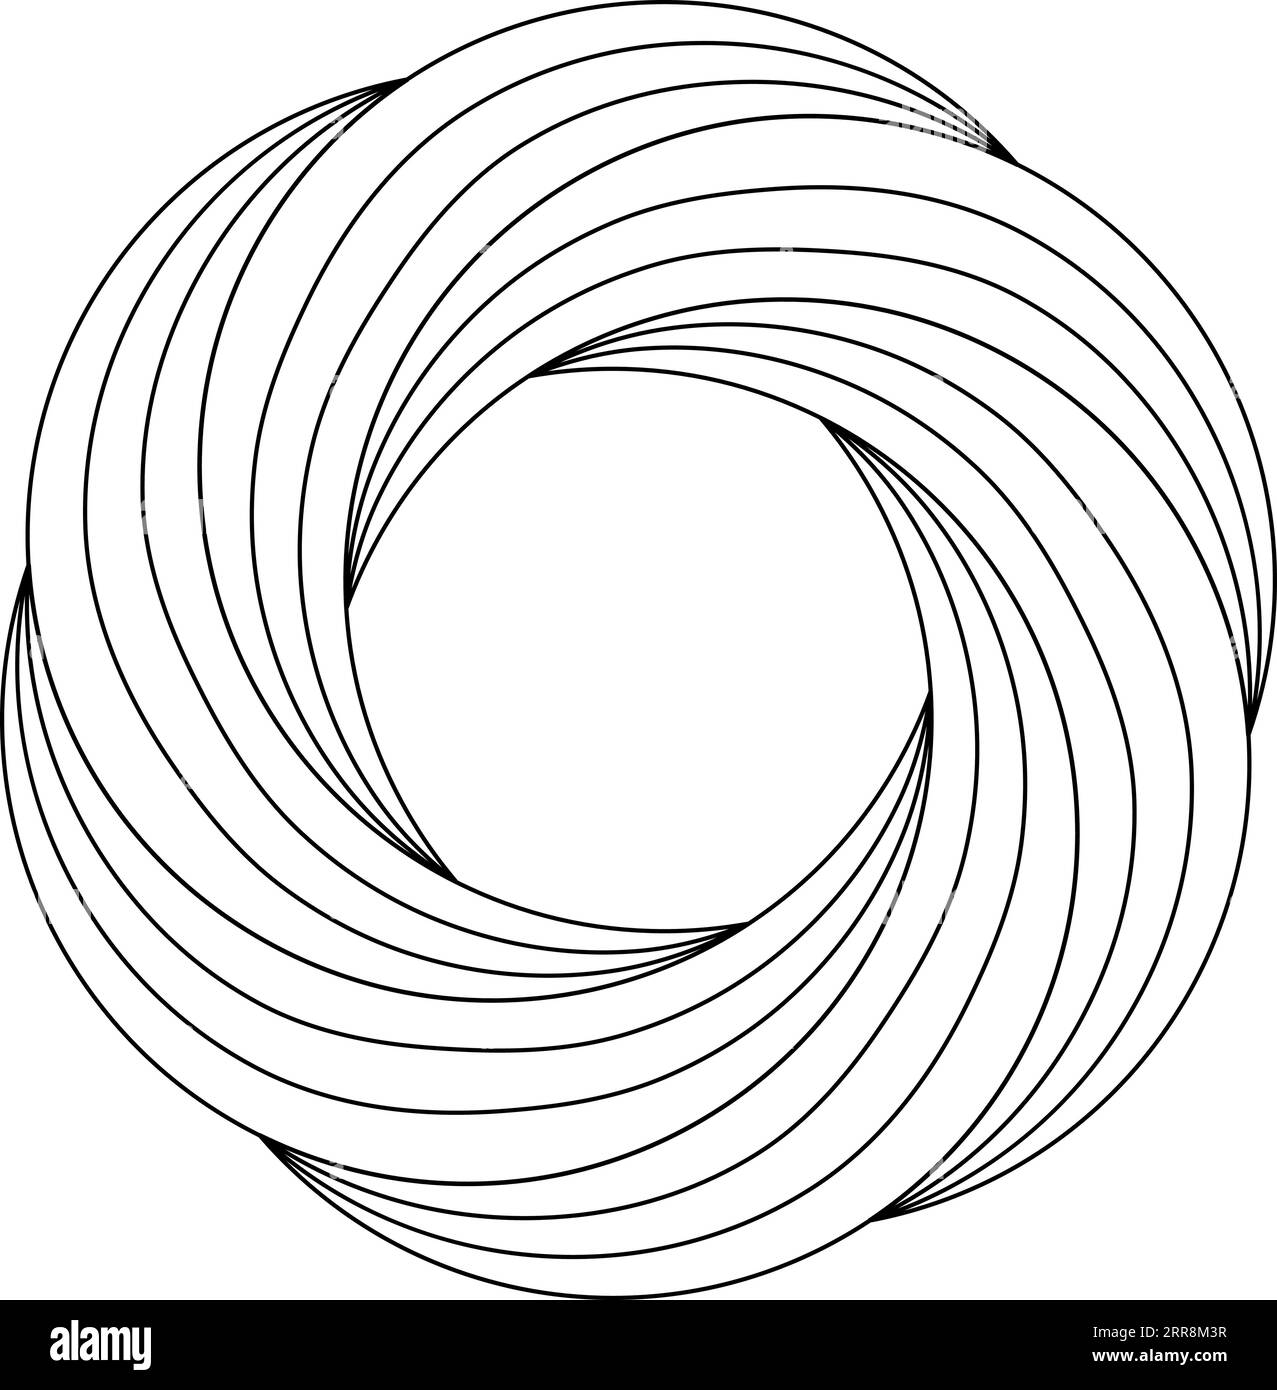 Kreisförmige Ringschablone mit Wirbelblütenmuster und feineren Linien Stock Vektor